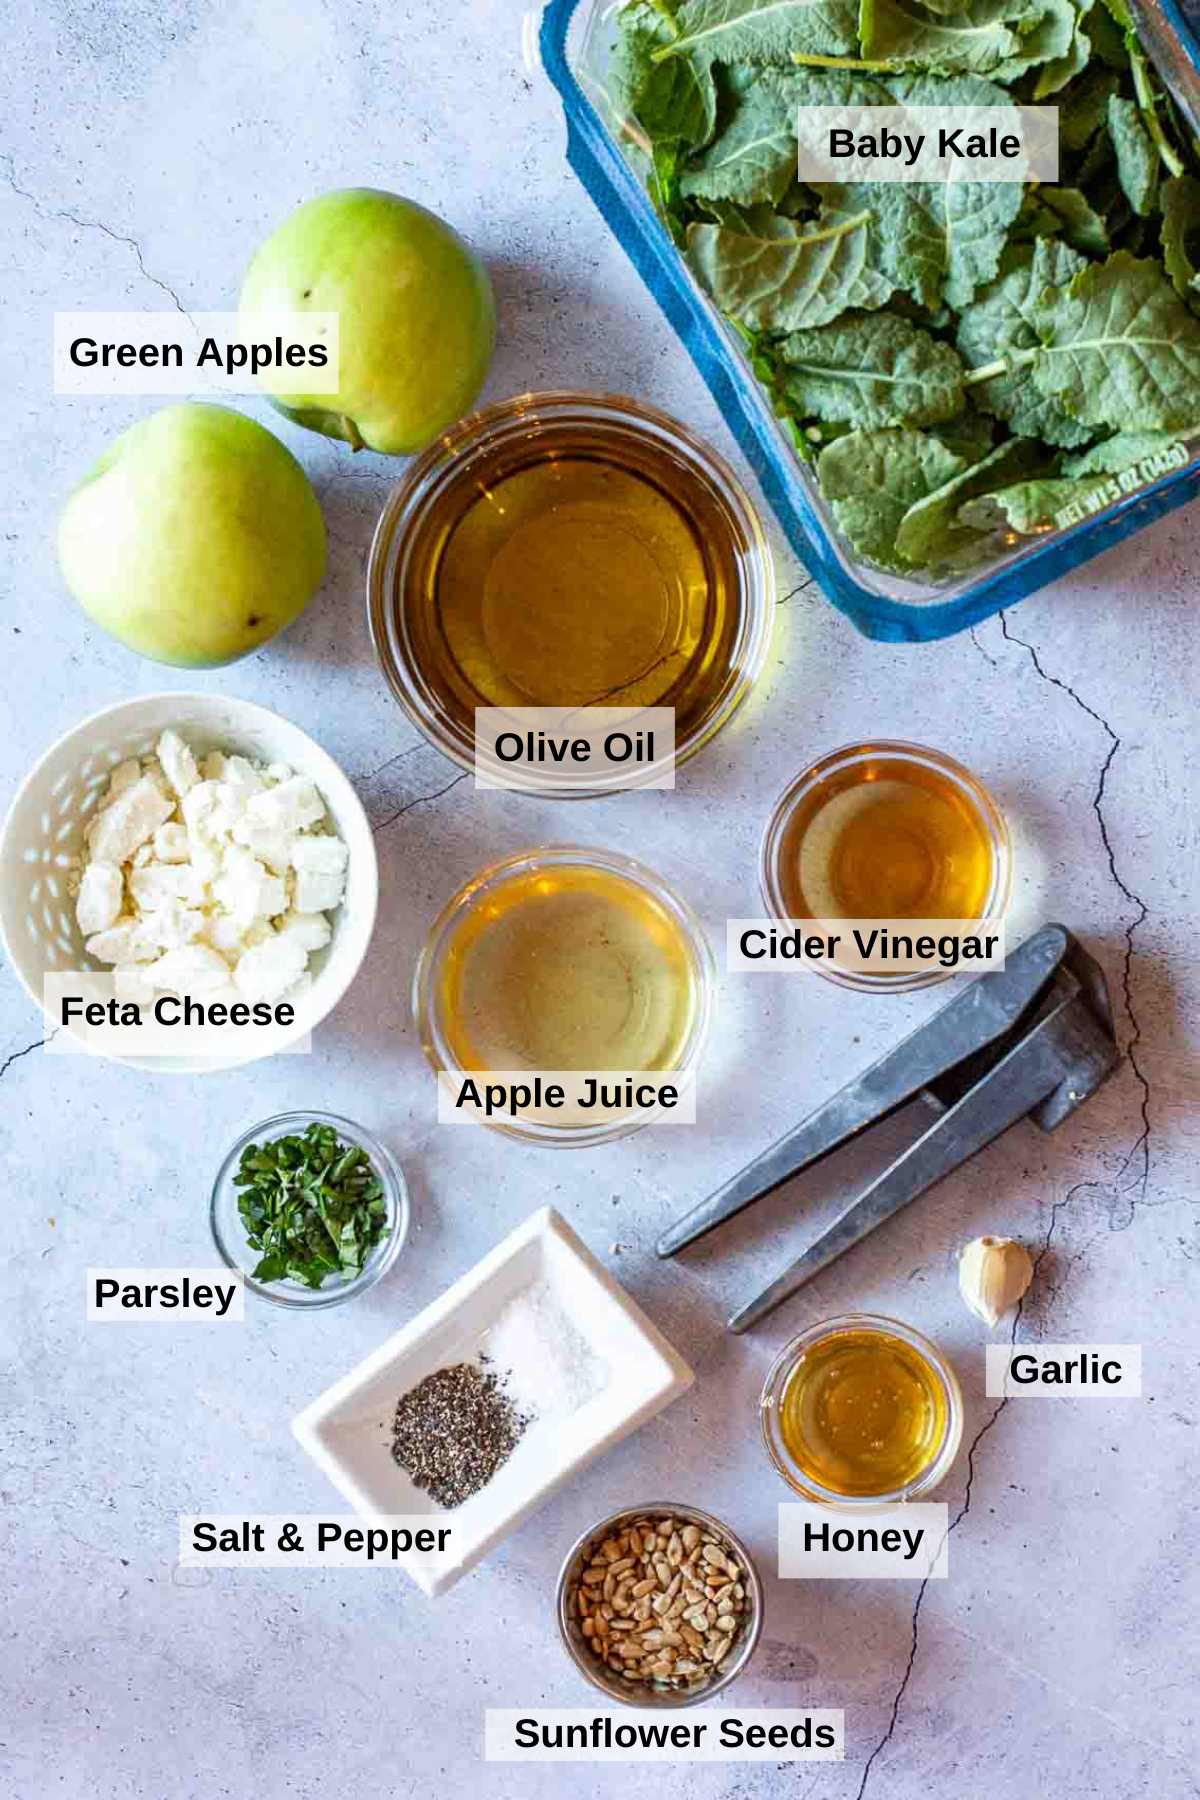 Ingredients to make baby kale salad.